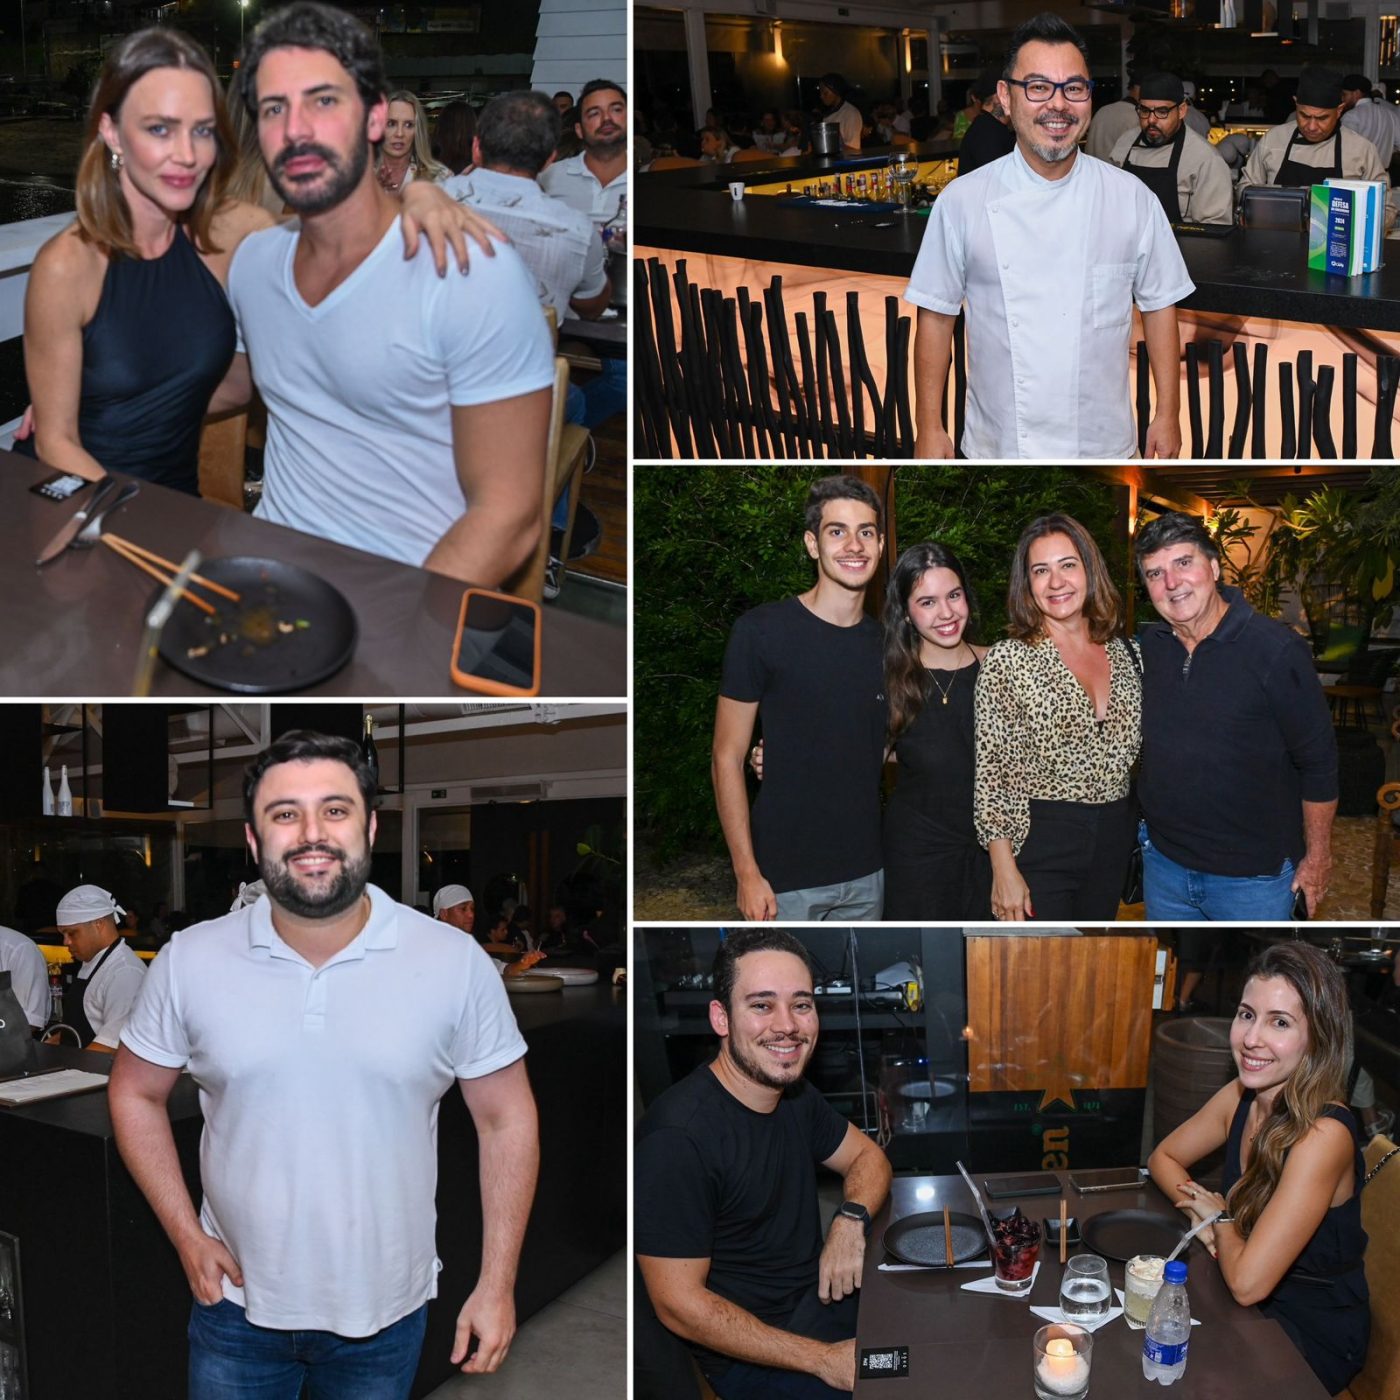 Giro de fotos: confira quem circulou neste fim de semana pelos restaurantes da Bahia Marina